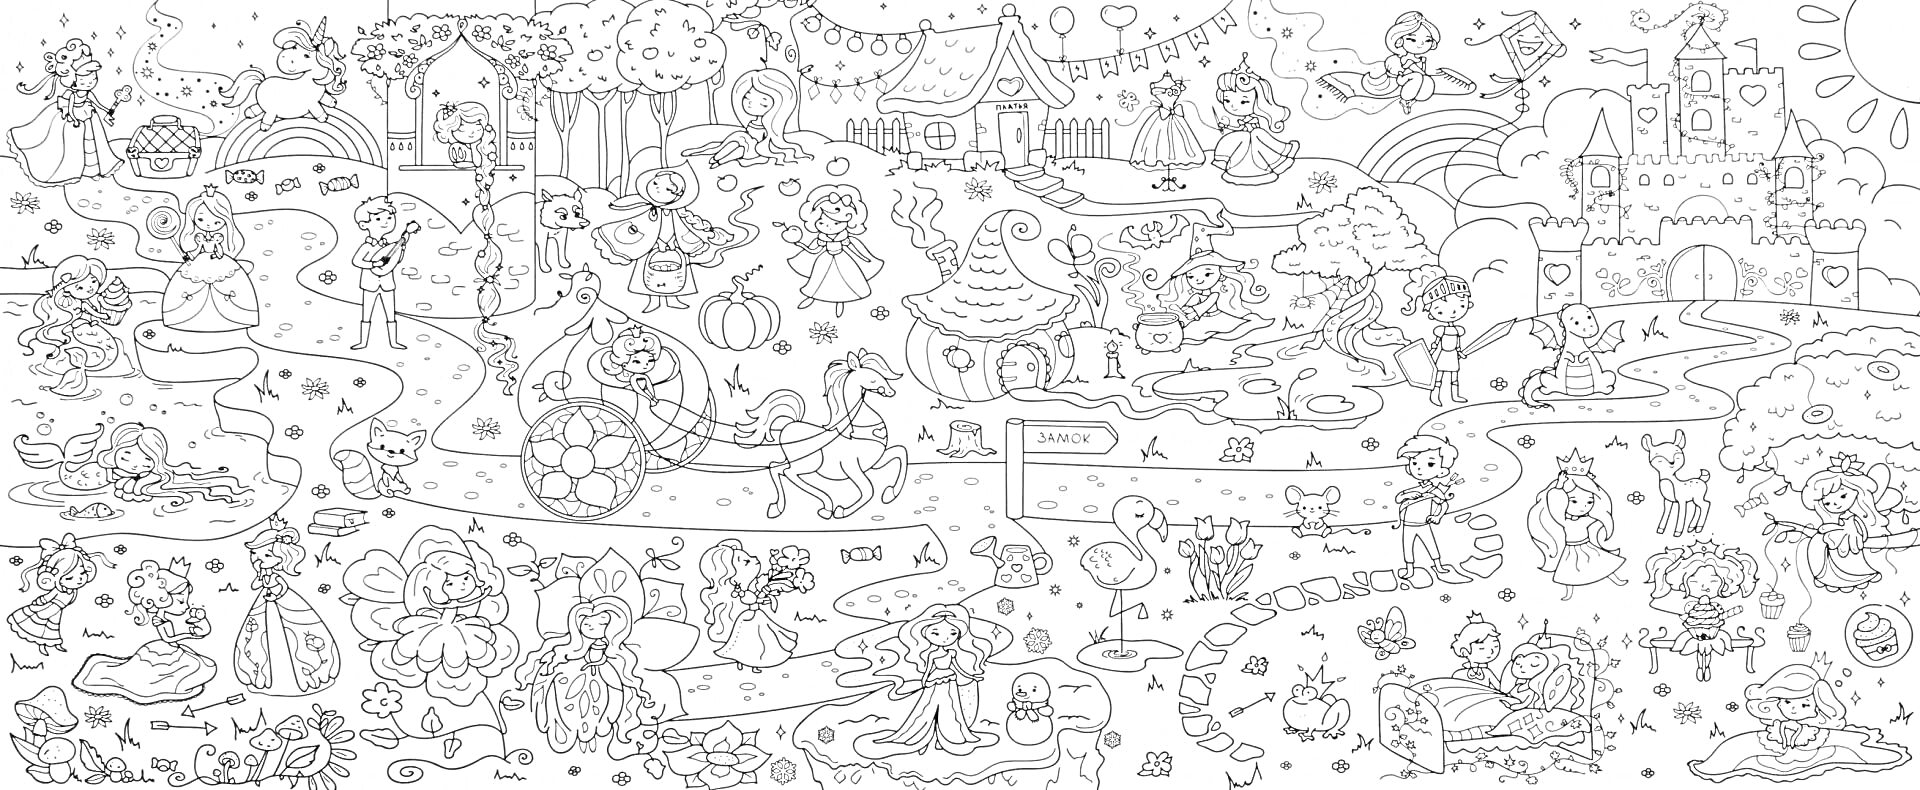 Раскраска Приключение в волшебном королевстве с принцессами, животными, лесными обитателями, замками, каретой, мостом, фонтаном, воздушными шарами и лодкой.